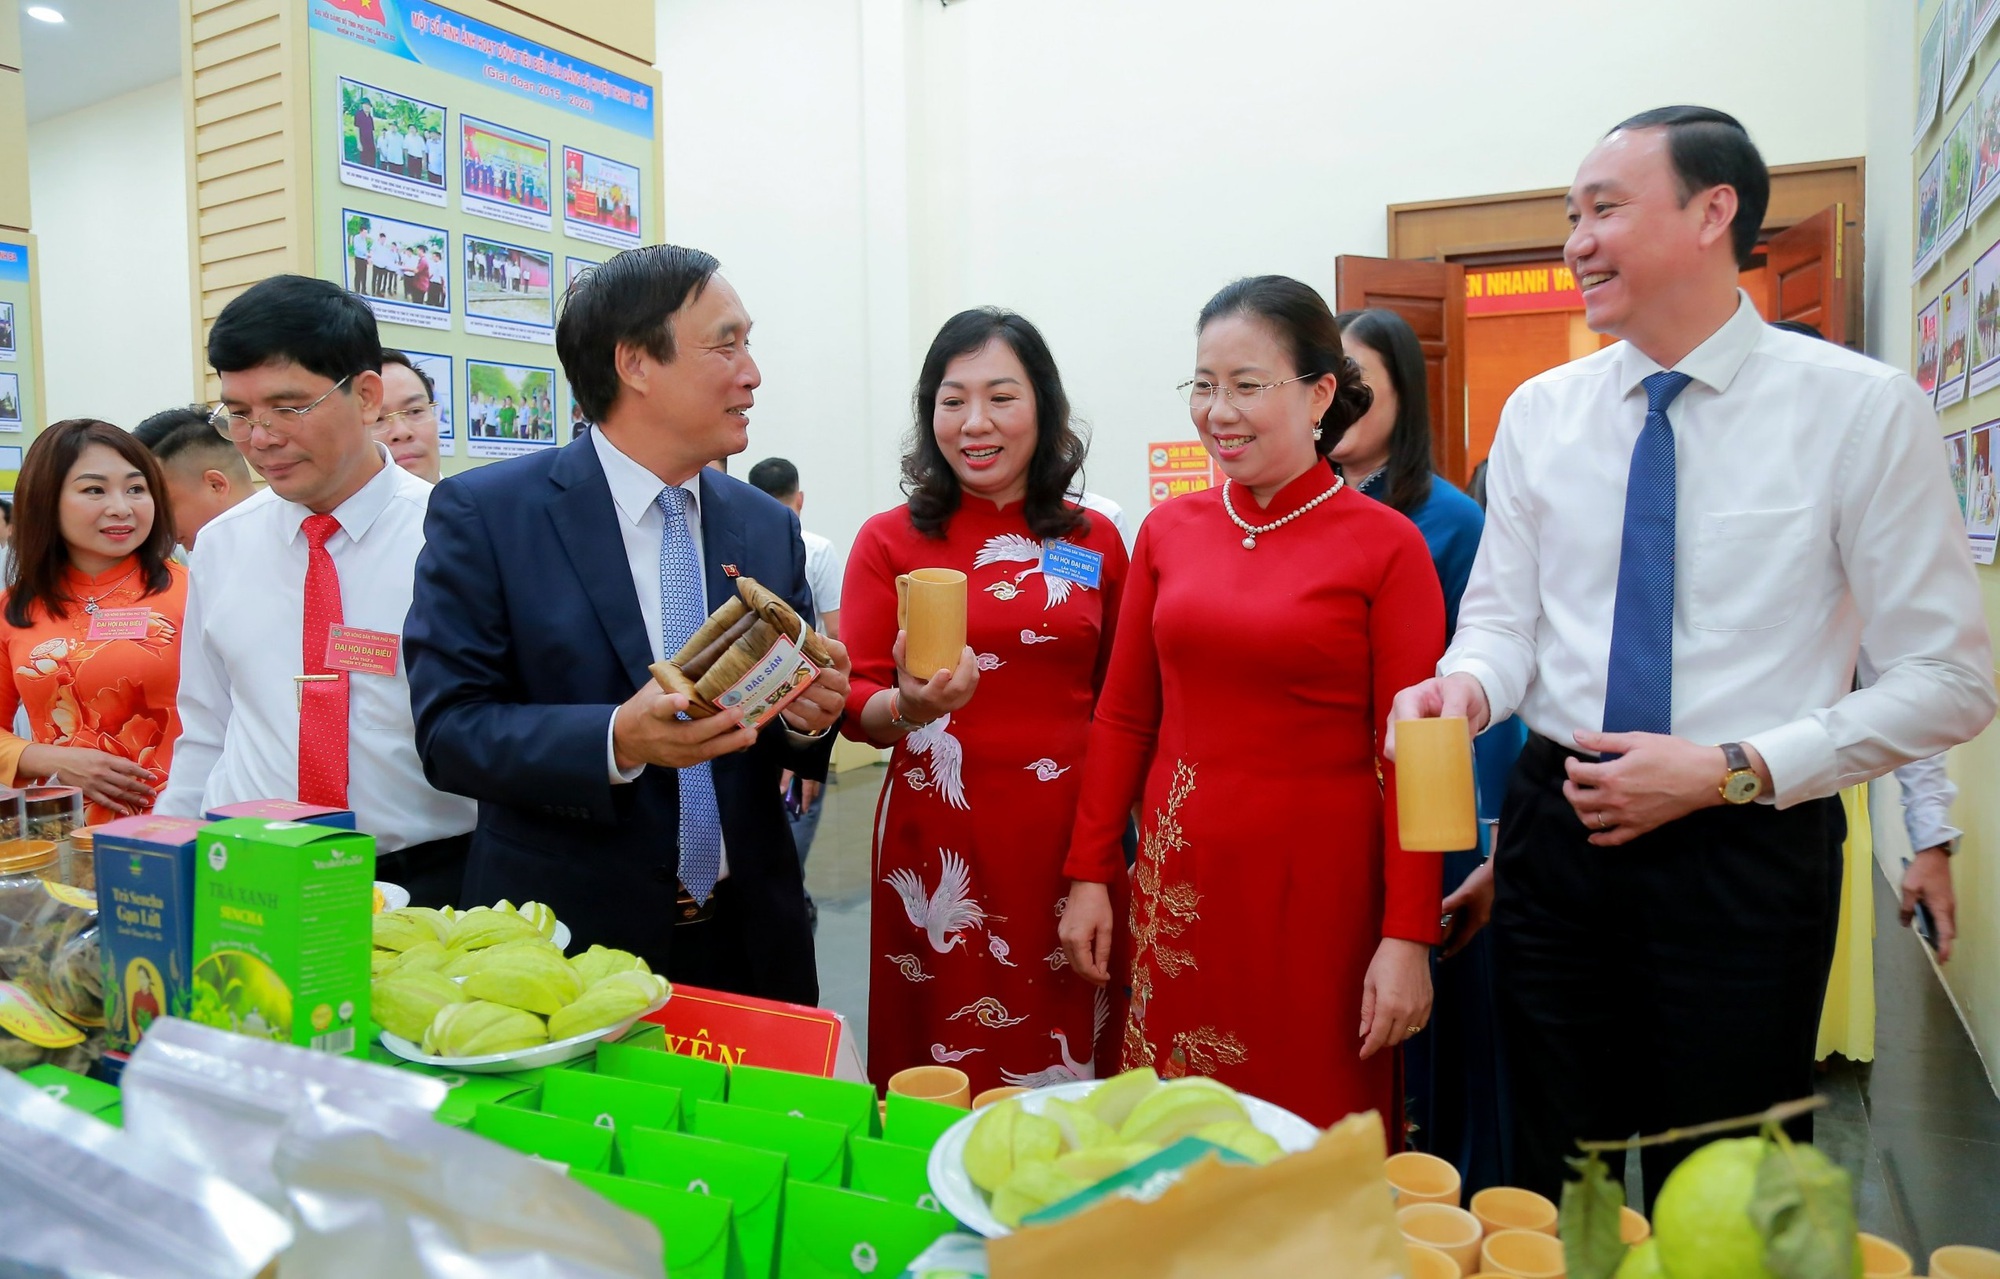 Phó Chủ tịch Hội NDVN Bùi Thị Thơm: Phú Thọ đi đầu kết nạp nhà khoa học, sinh viên làm hội viên Hội Nông dân- Ảnh 3.